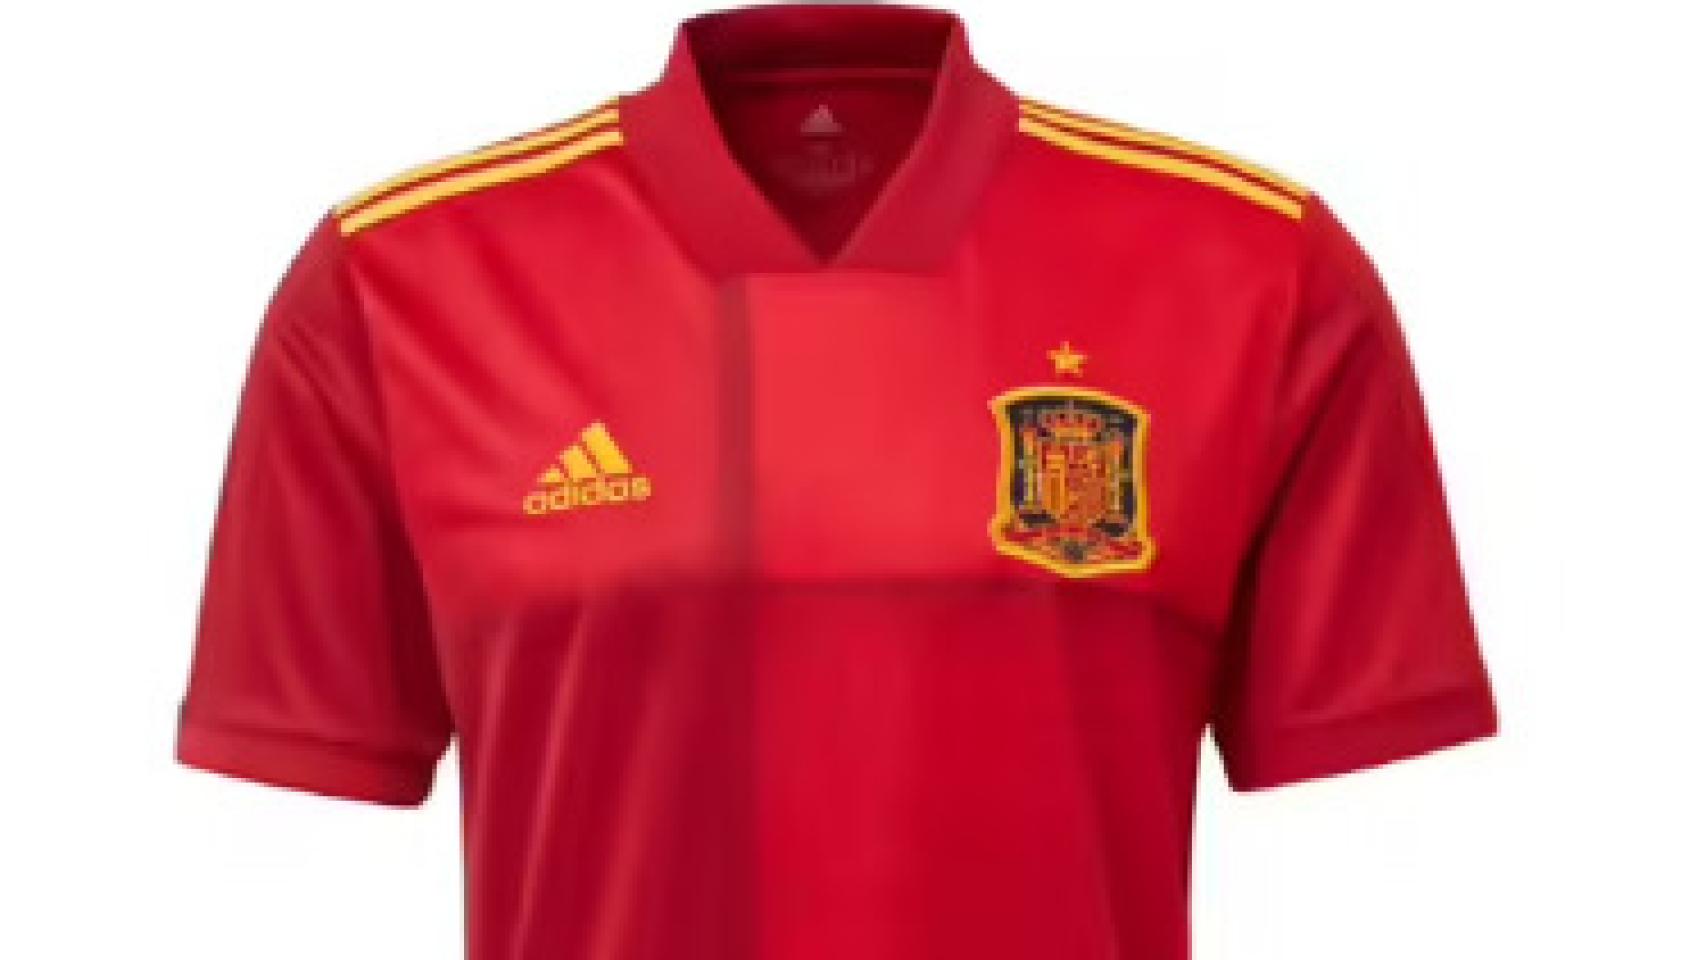 La oferta irresistible Decathlon: la camiseta de España con 45% descuento